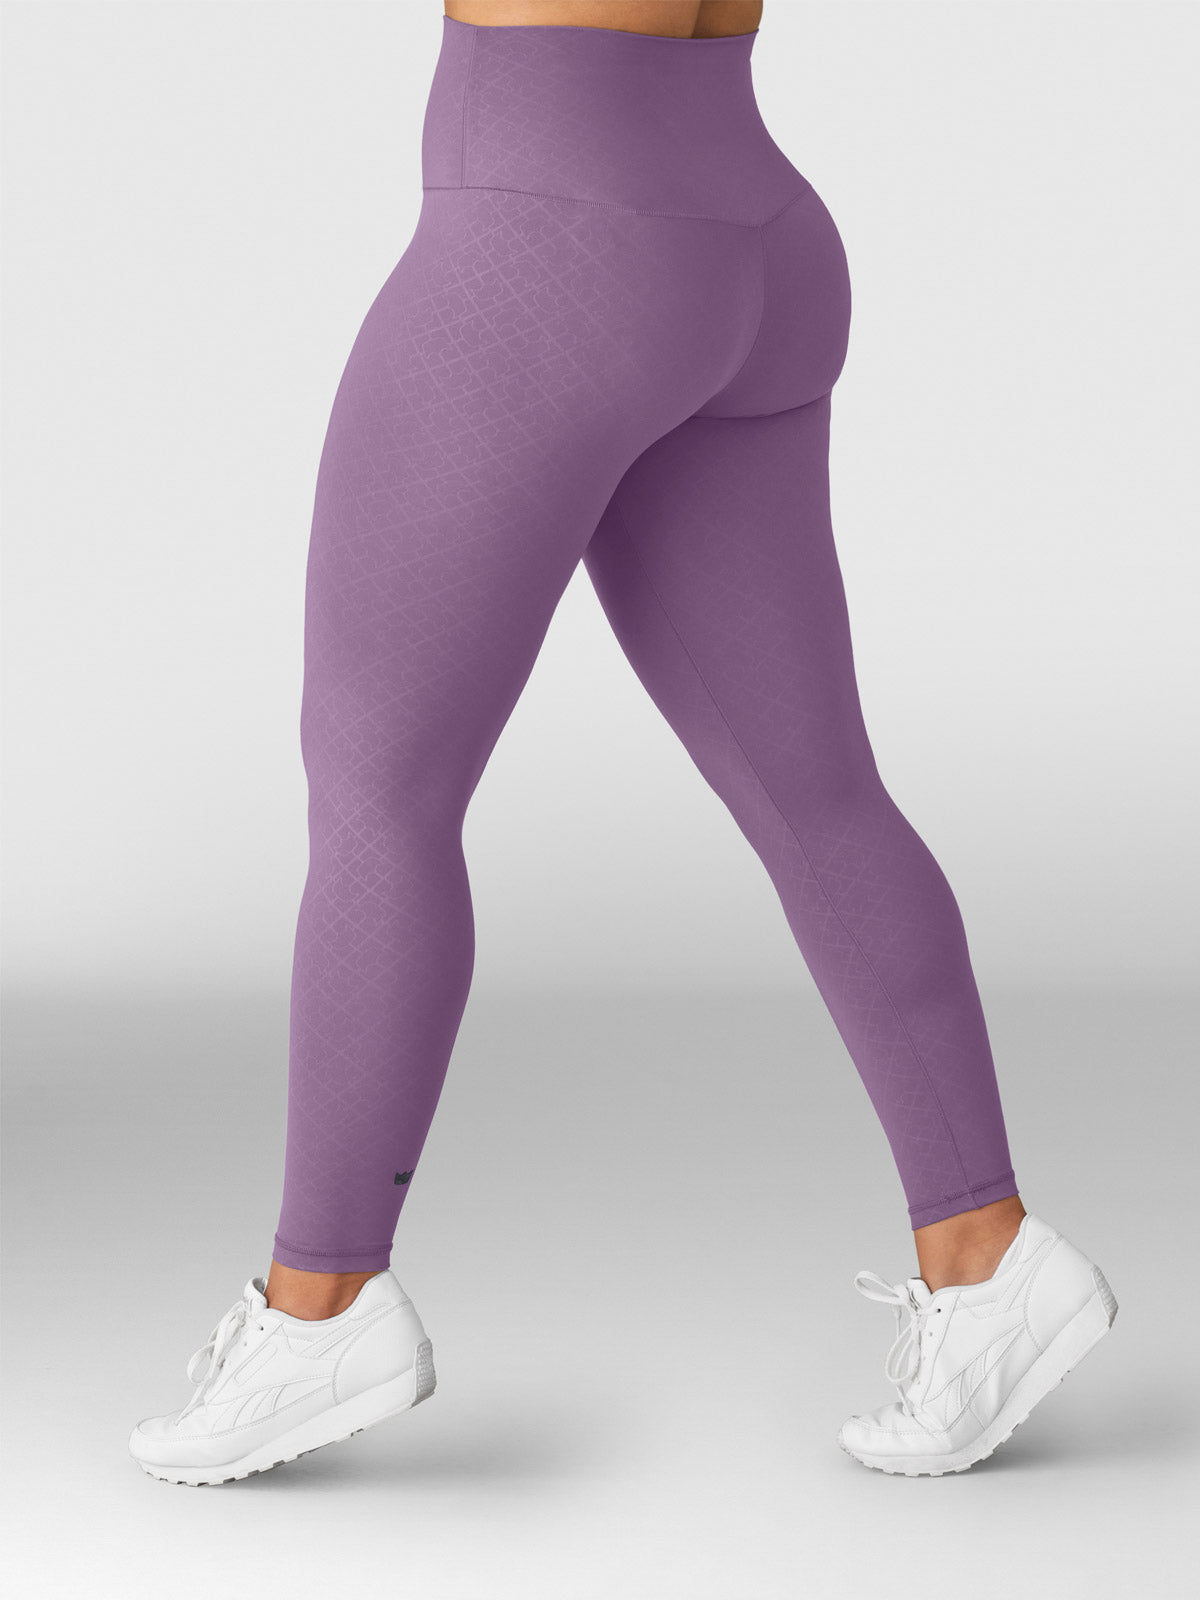 Fitness workout leggings - #Boss girl - 4 colors